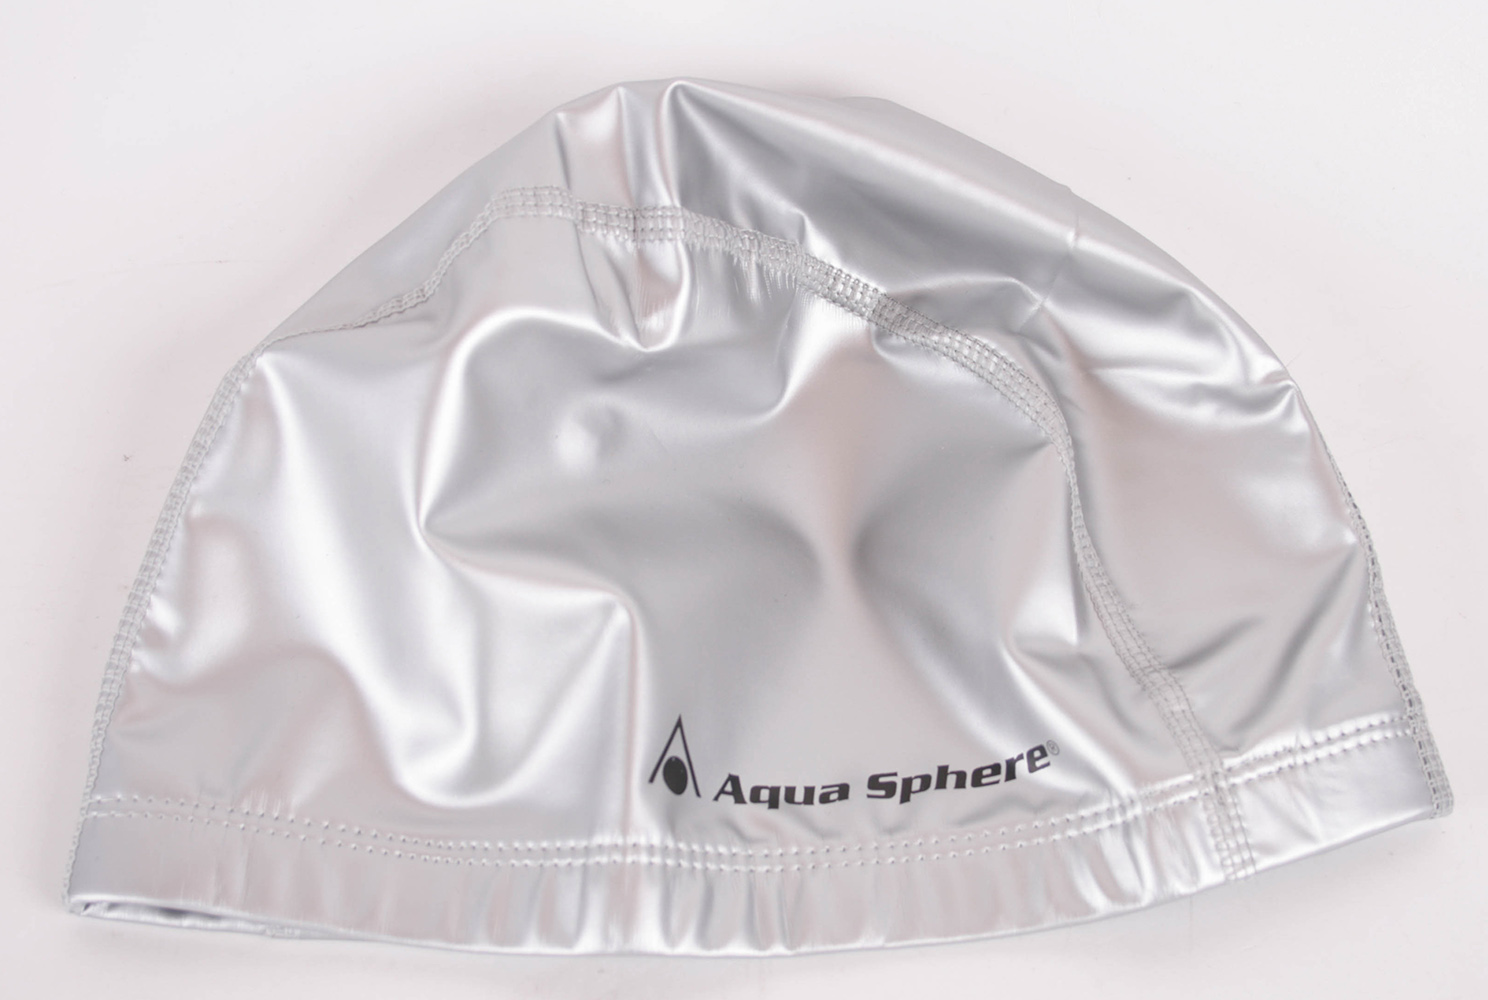 AQUA Sphere SPEED GSRT bonnet de bain assorti bonnet de bain gris/argent bonnet taille unique